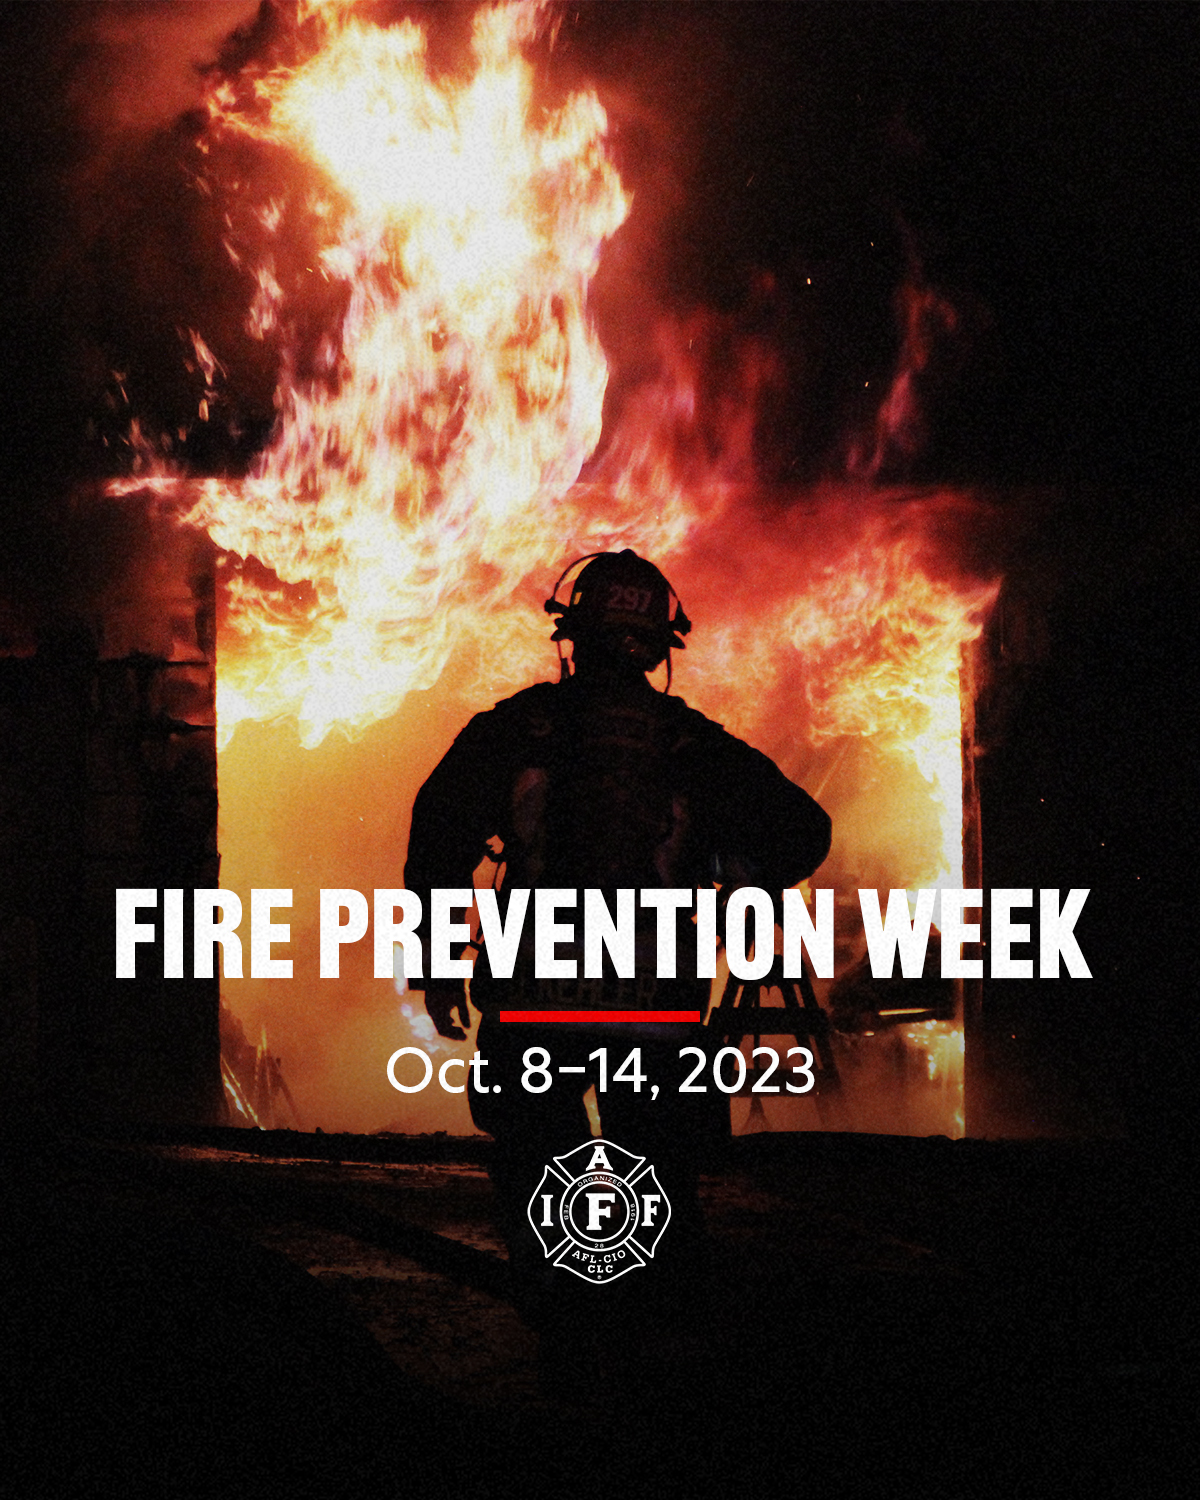 Ressources sur la prévention des incendies - IAFF